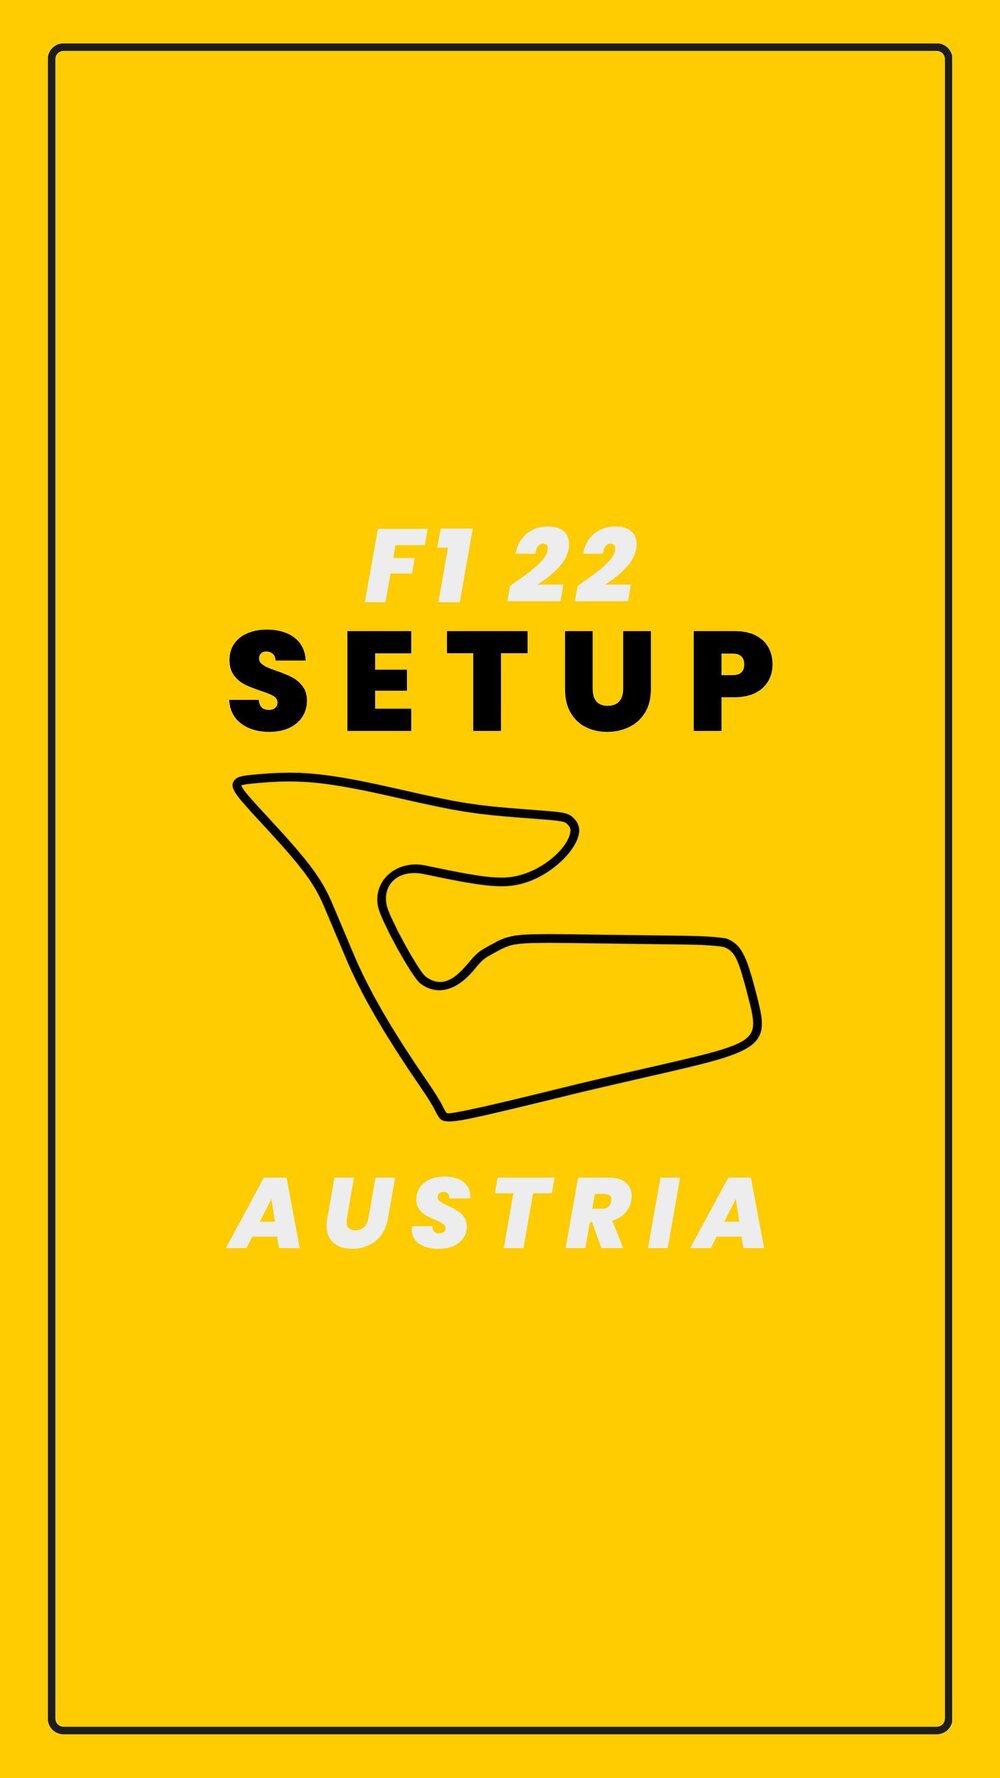 F1 22 Setups